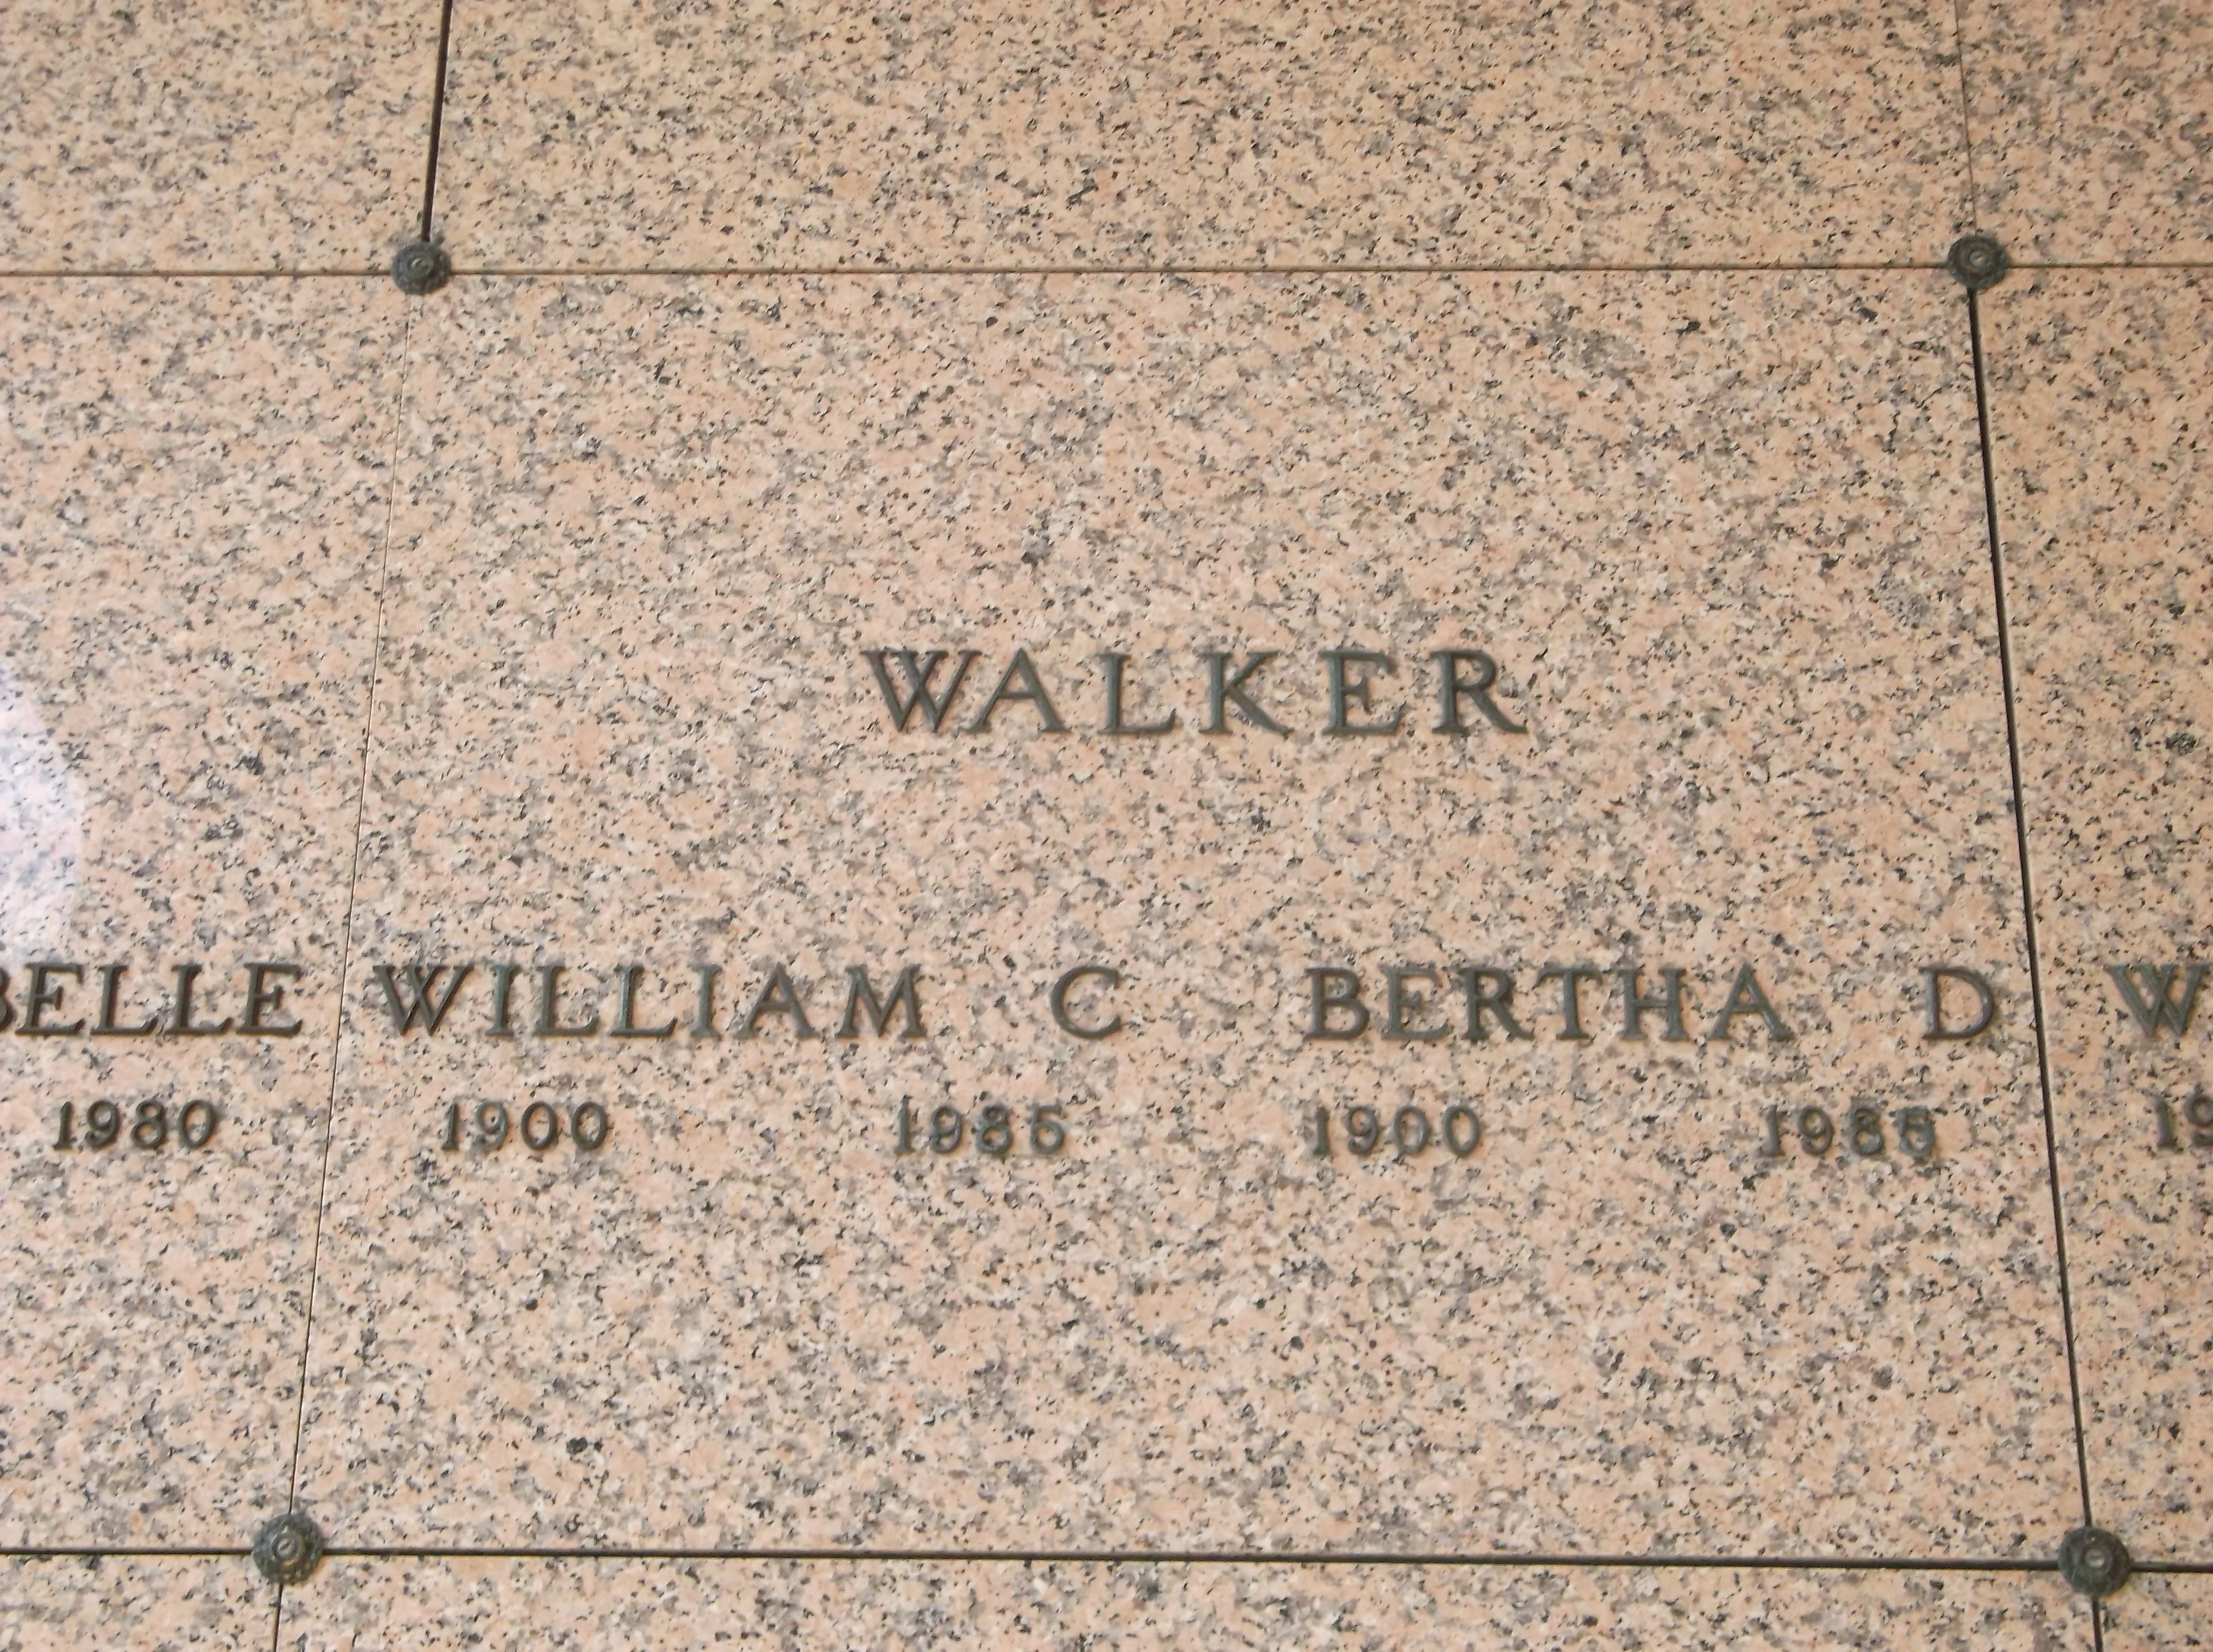 Bertha D Walker